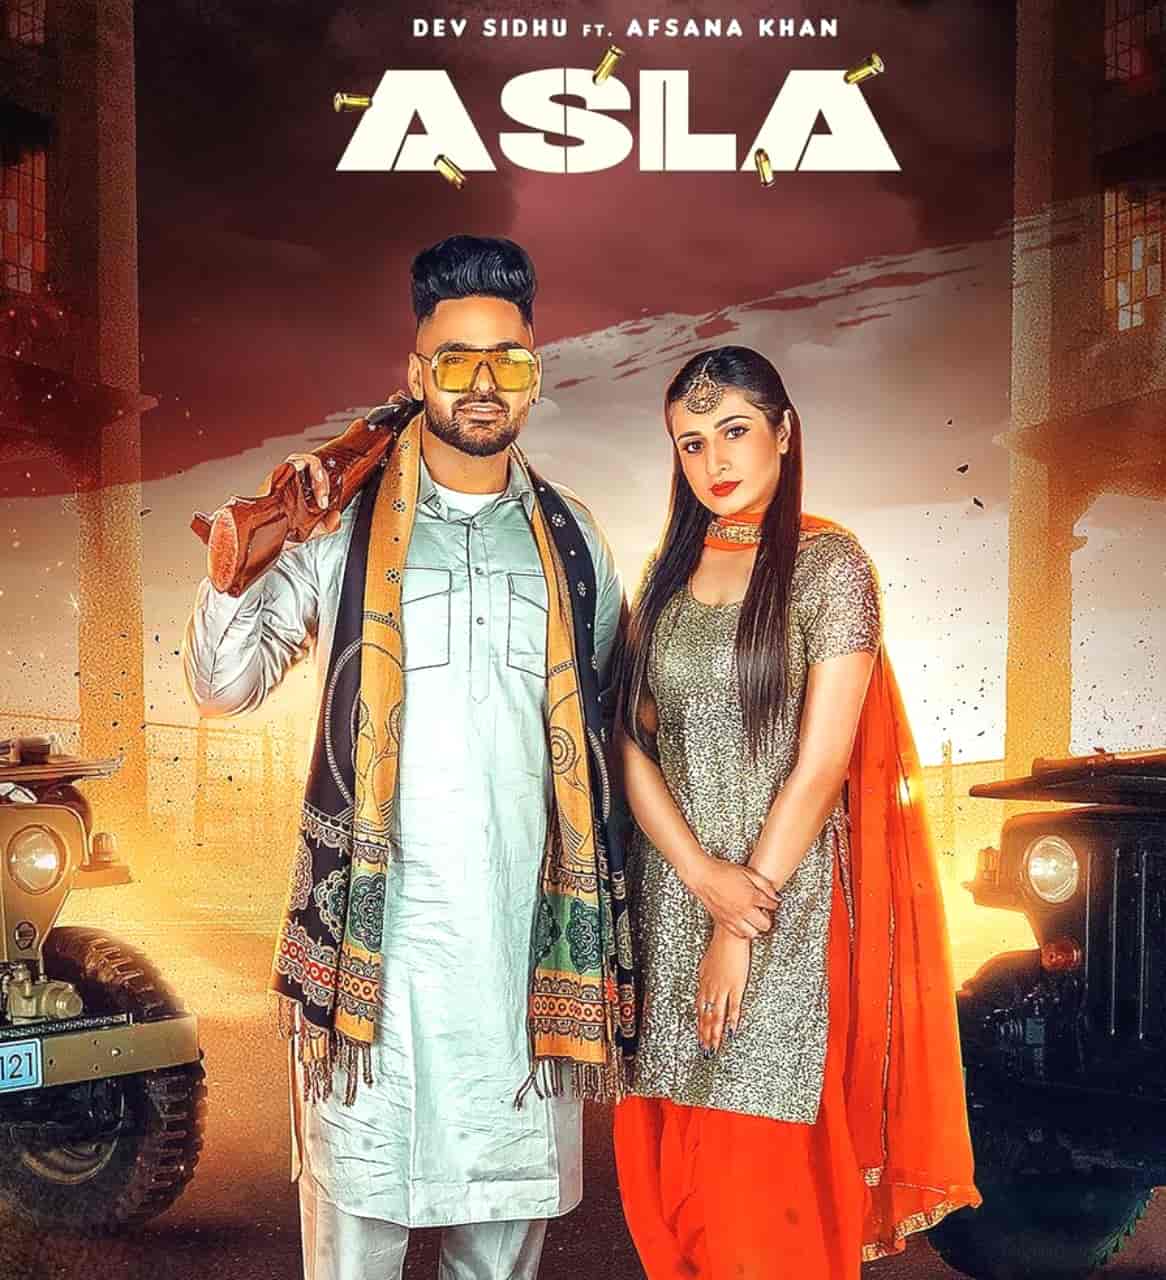 Asla Punjabi Song Image Features Dev Sidhu and Afsana Khan